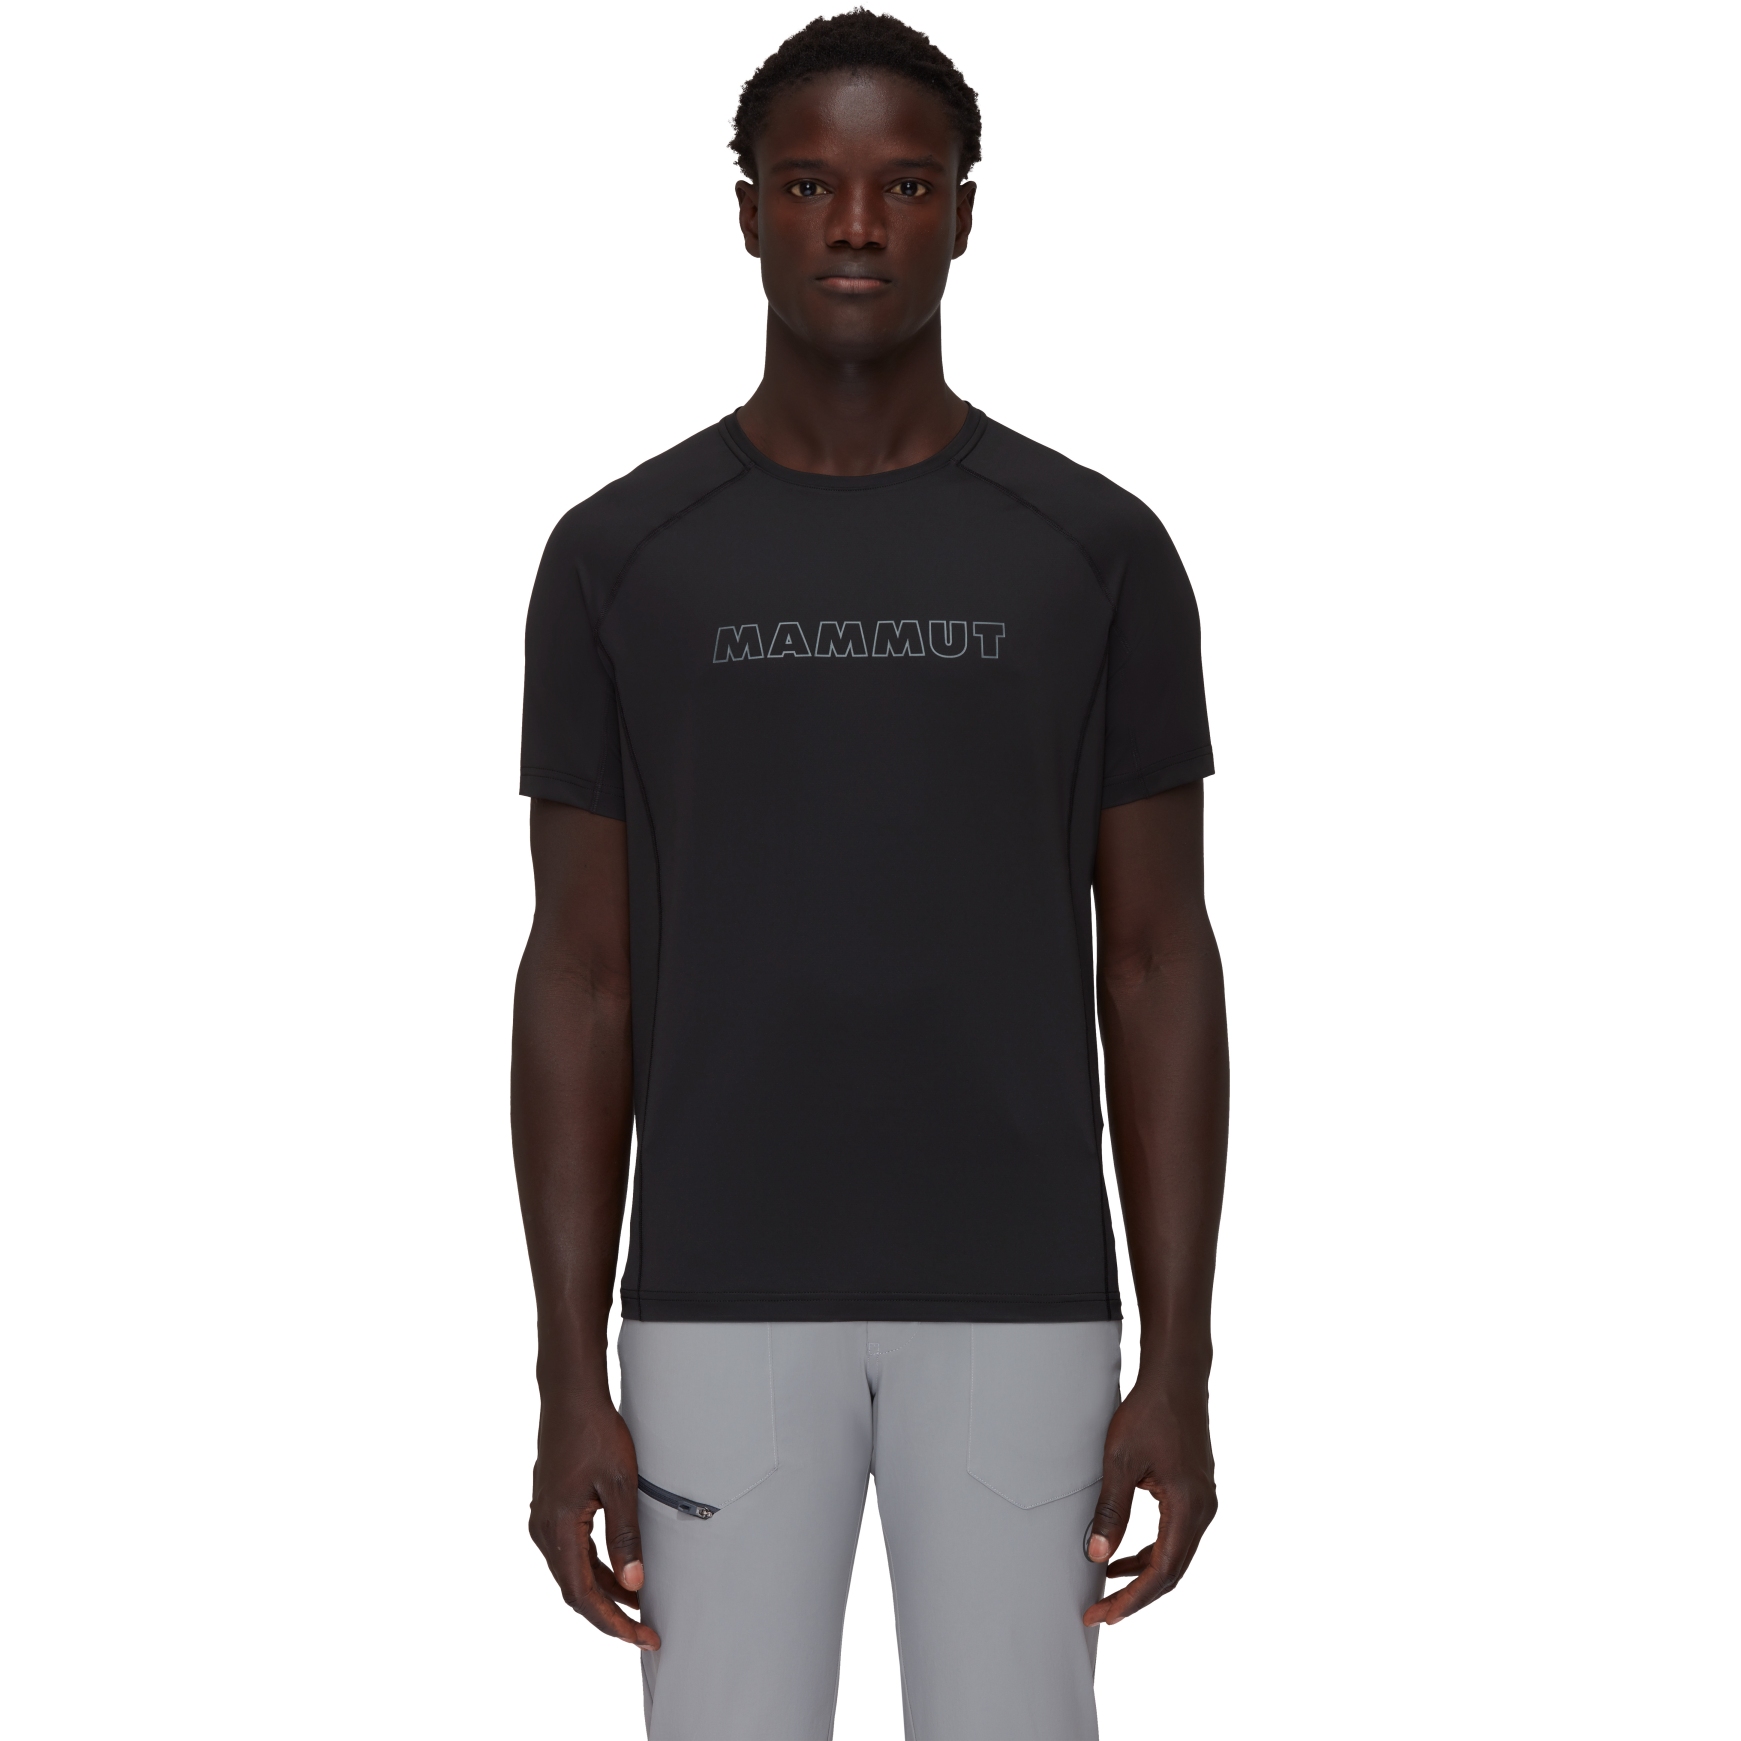 Produktbild von Mammut Selun Logo T-Shirt Herren - schwarz